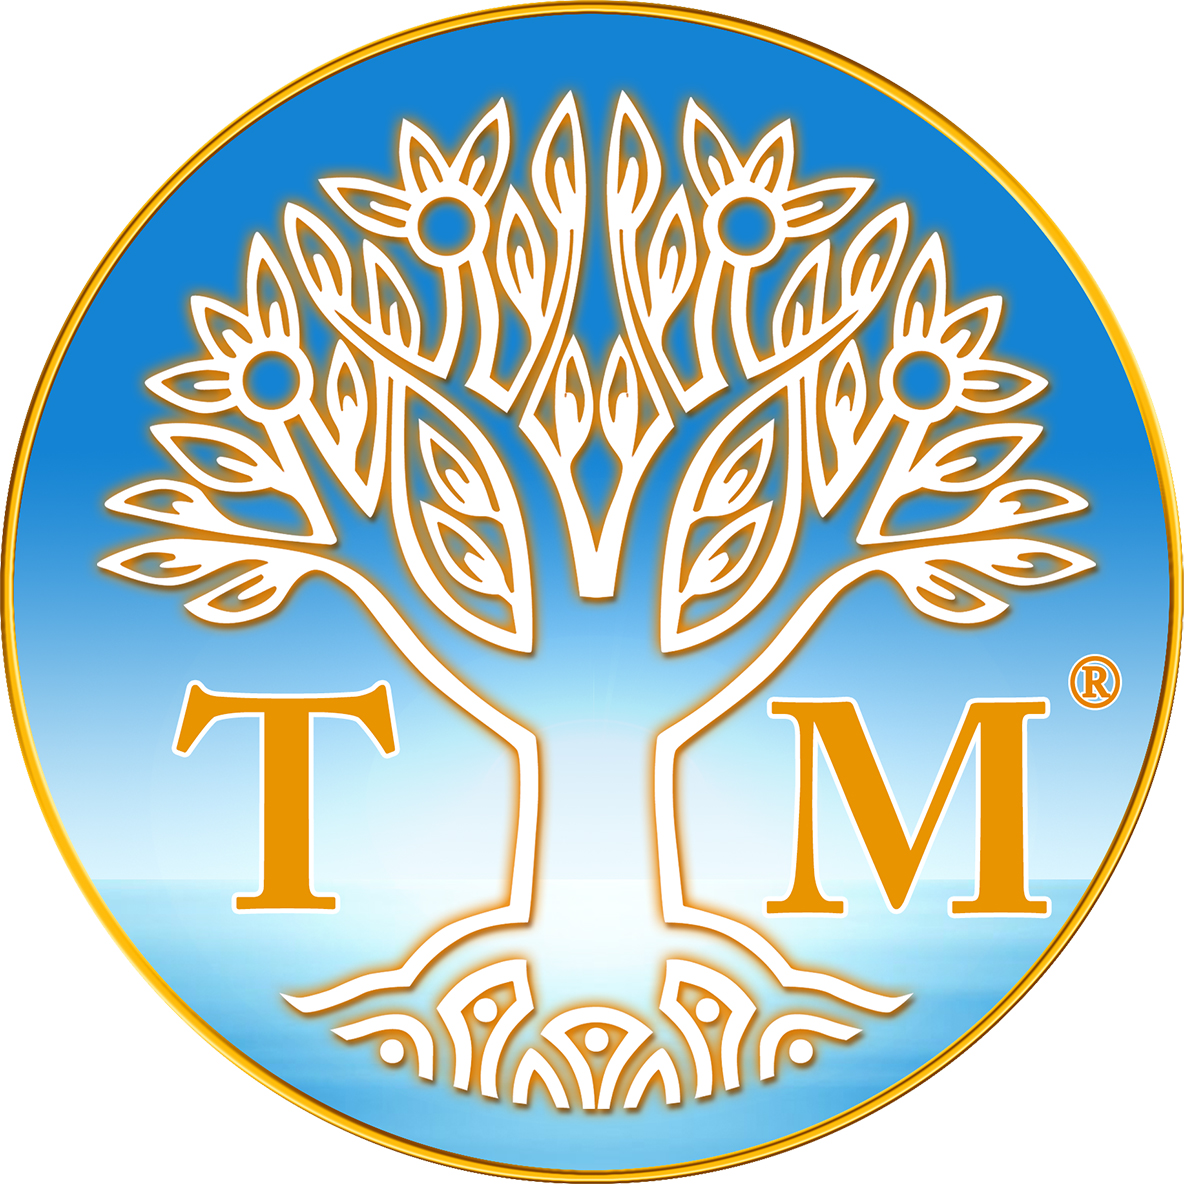 Summit Transcendental Meditation program